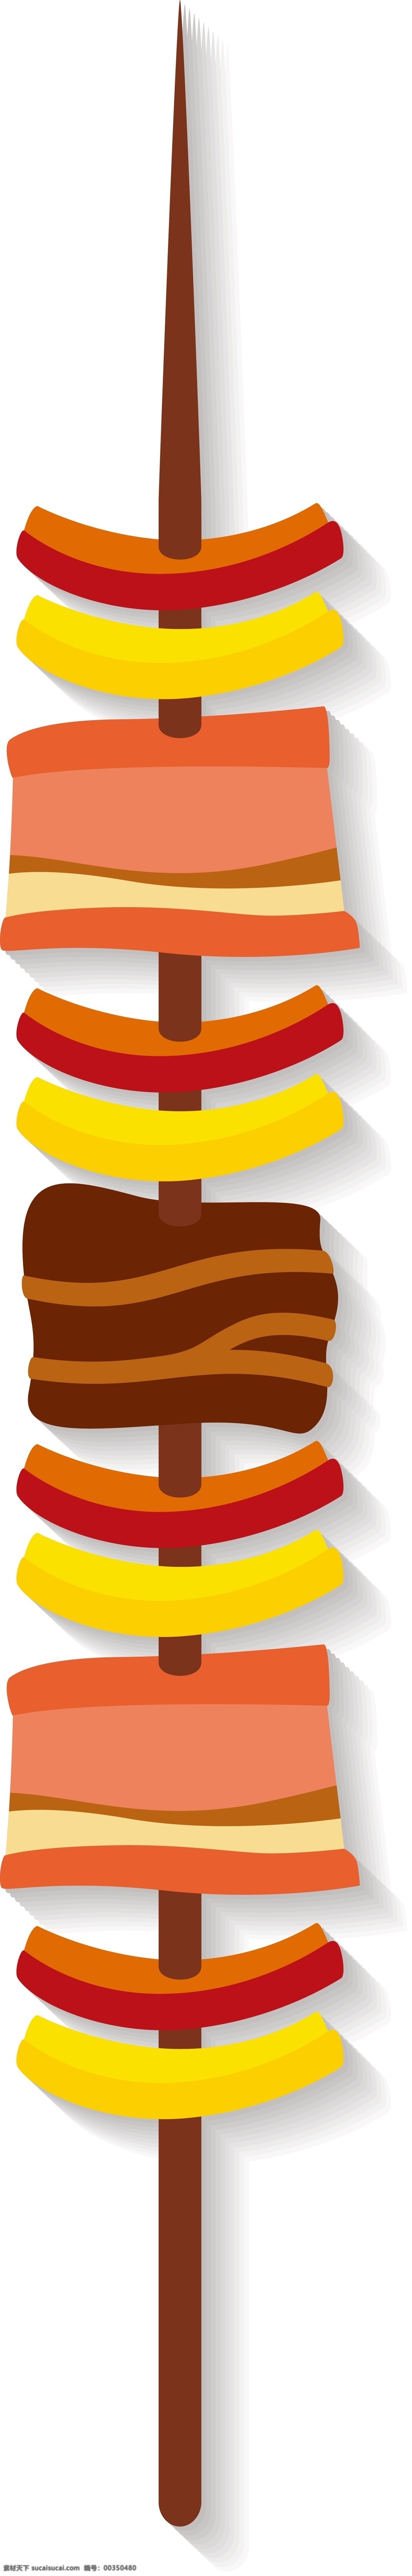 新鲜 烤串 装饰 插画 新鲜的烤串 烤串装饰 烤串插画 立体烤串 卡通烤串 美味的烤串 营养烤串